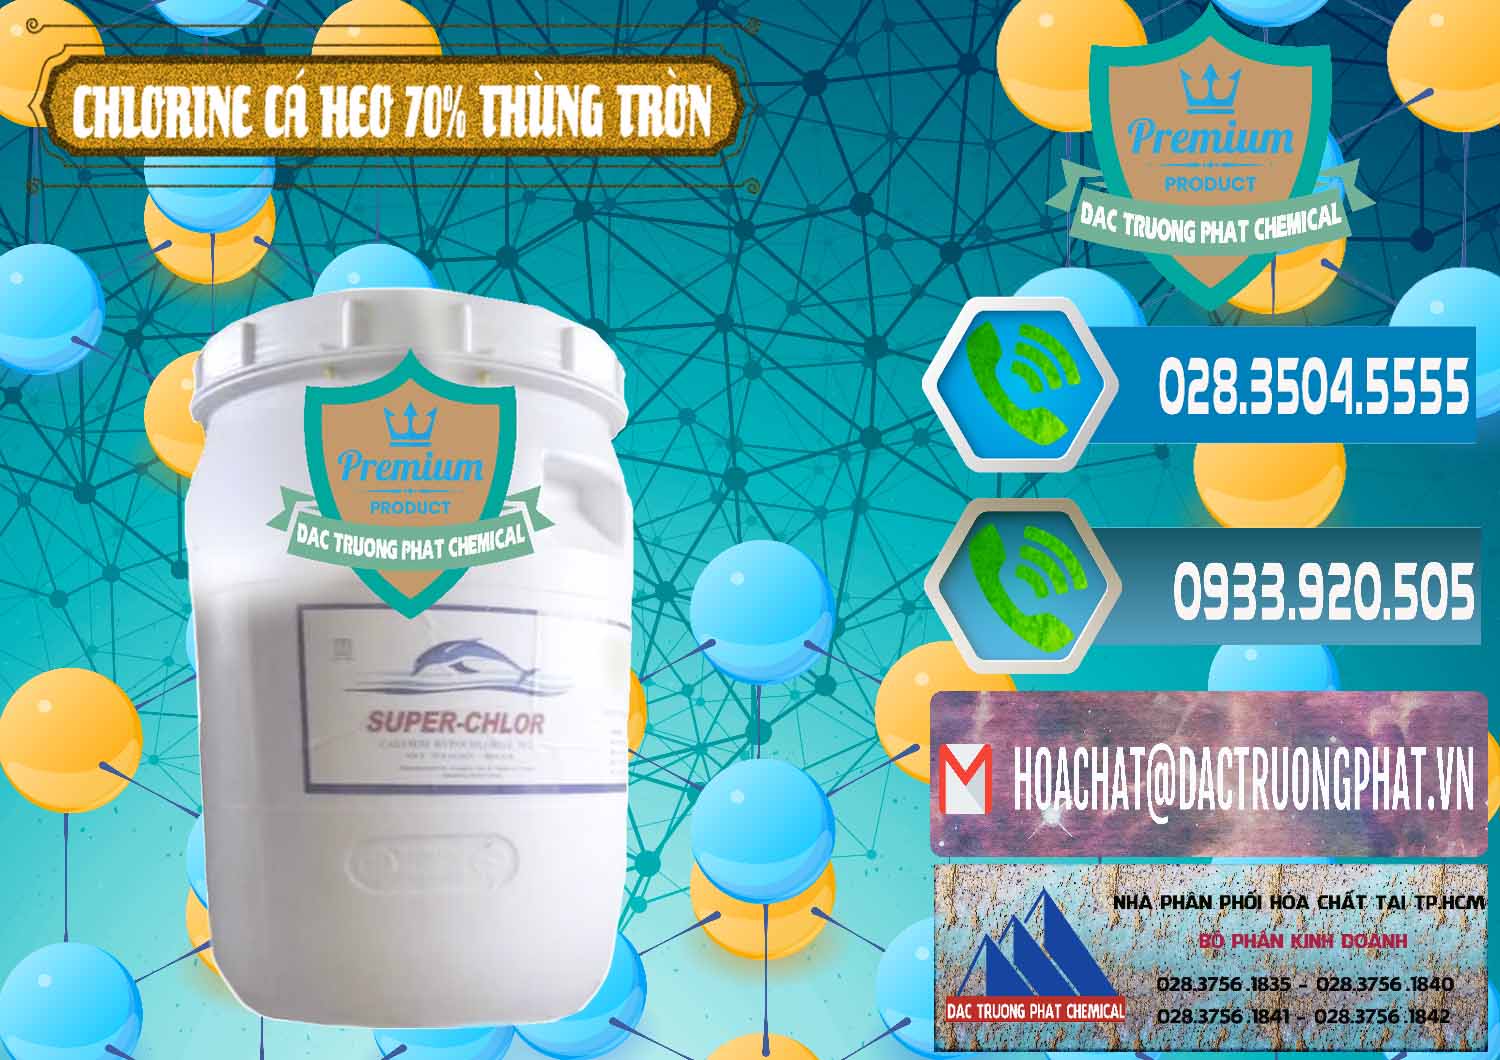 Công ty chuyên phân phối & bán Clorin - Chlorine Cá Heo 70% Super Chlor Thùng Tròn Nắp Trắng Trung Quốc China - 0239 - Chuyên kinh doanh và cung cấp hóa chất tại TP.HCM - congtyhoachat.net